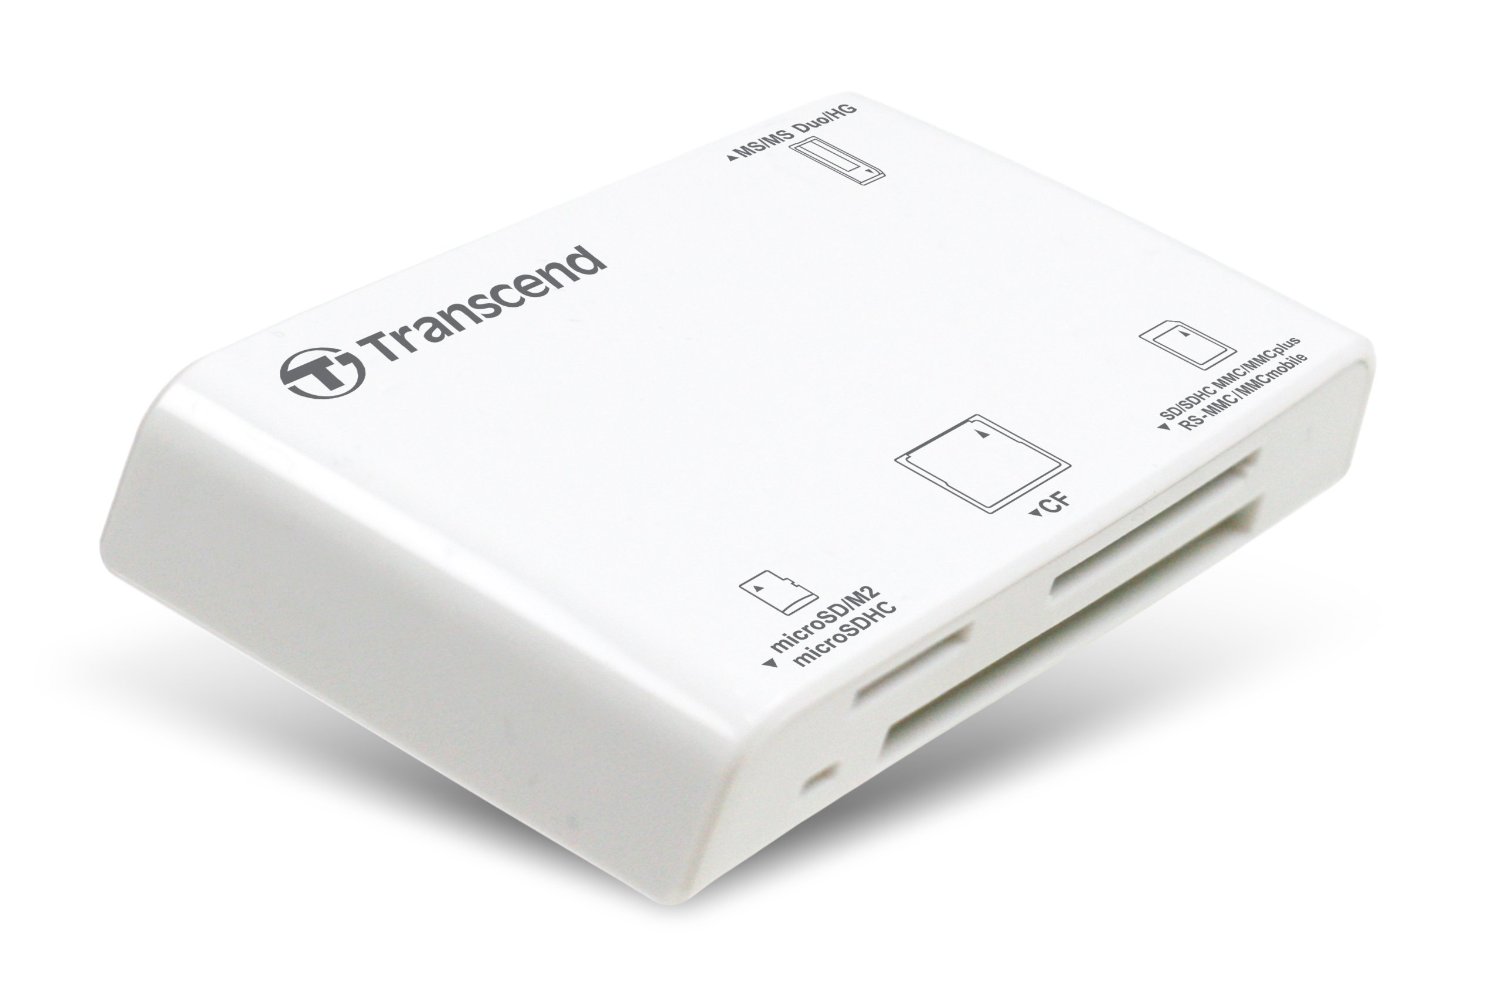 Адаптер,Transcend TS-RDP8W White, All-In-One Card Reader USB 2.0